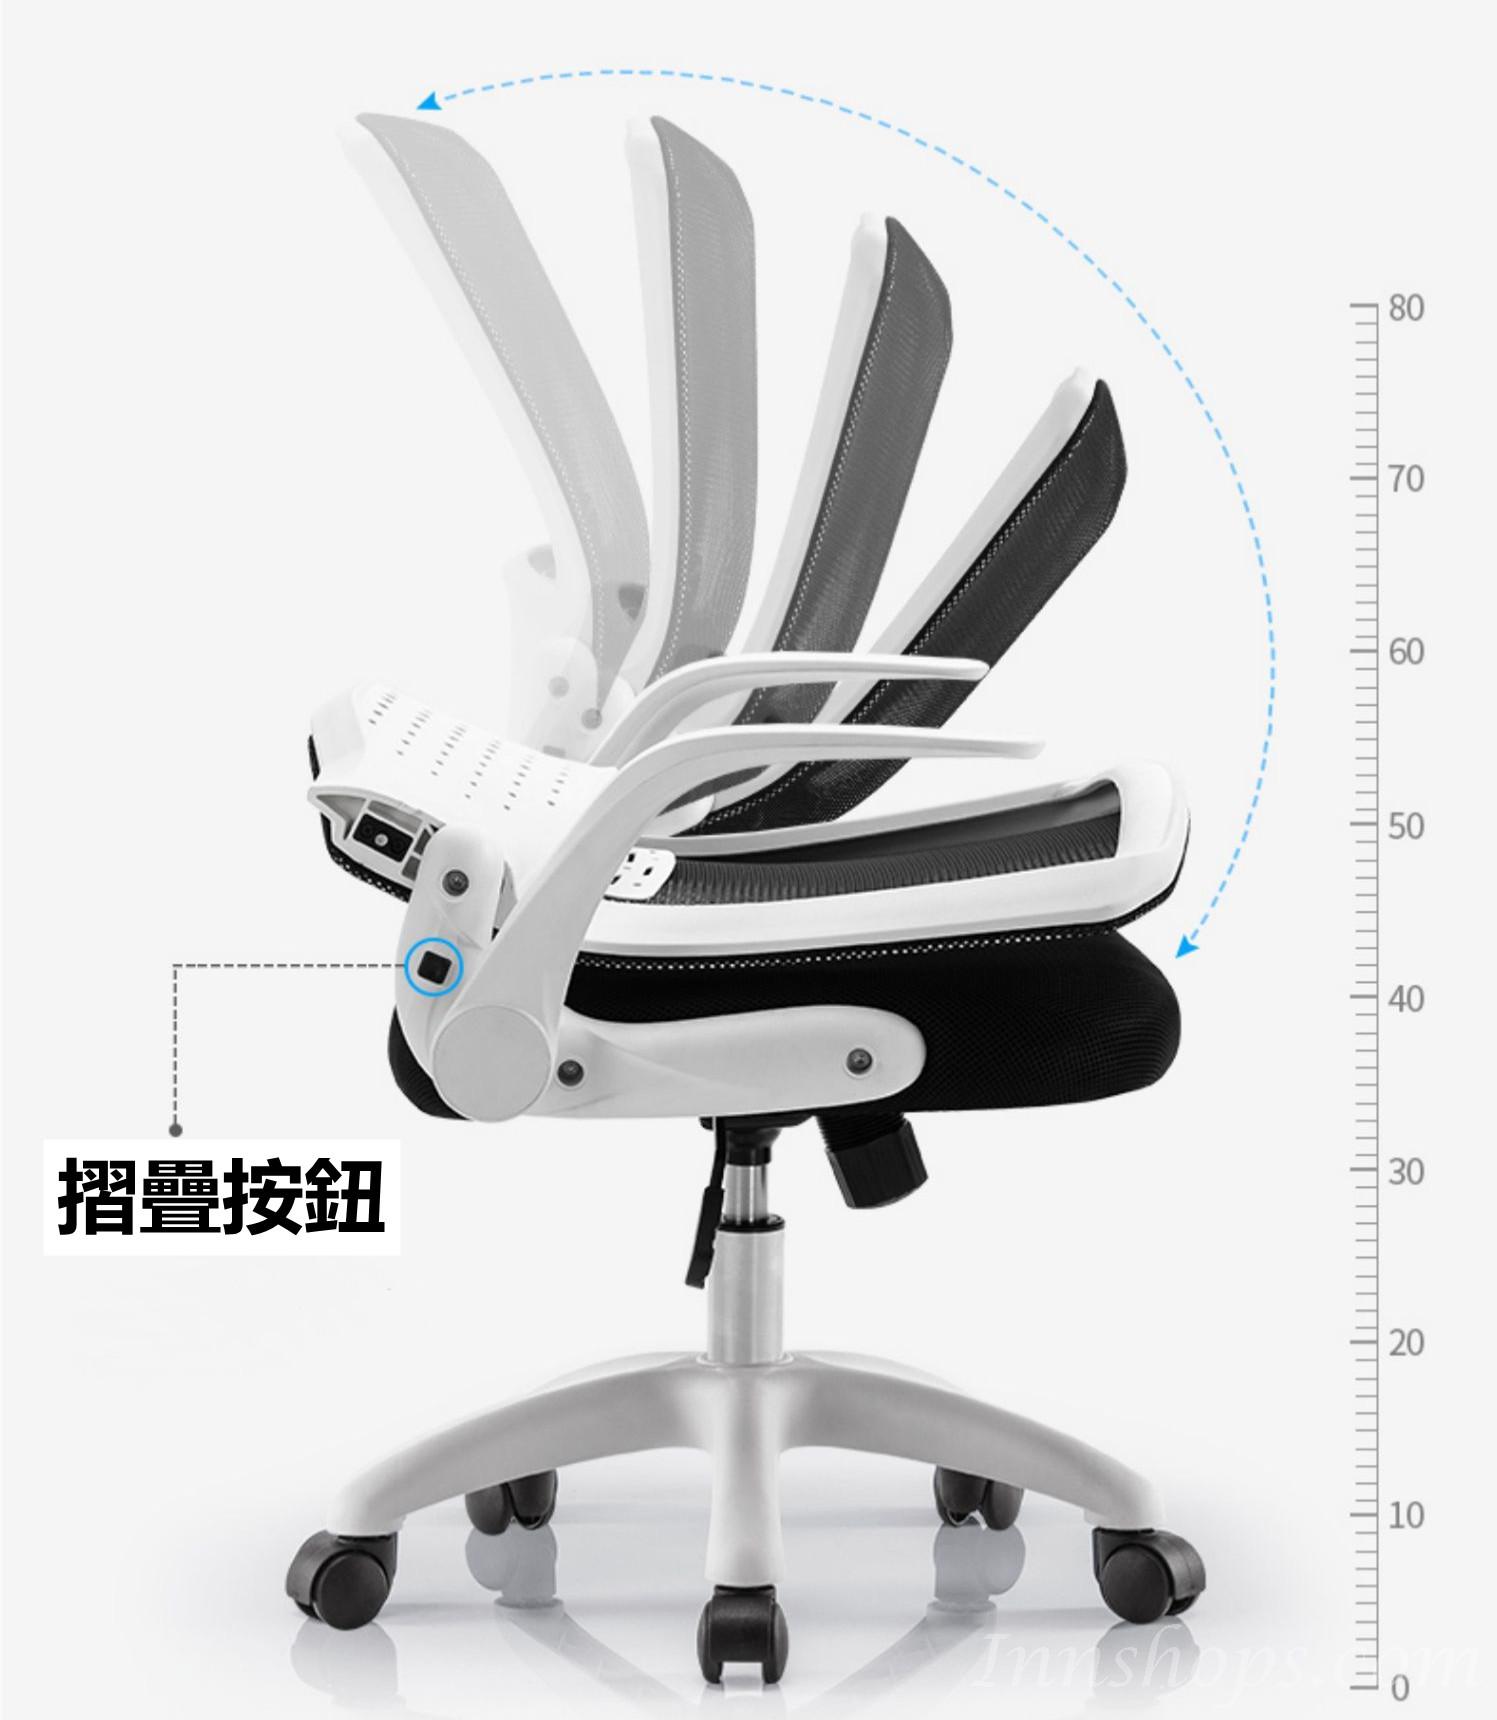 時尚電腦椅 (可摺疊椅背) (IS7395)